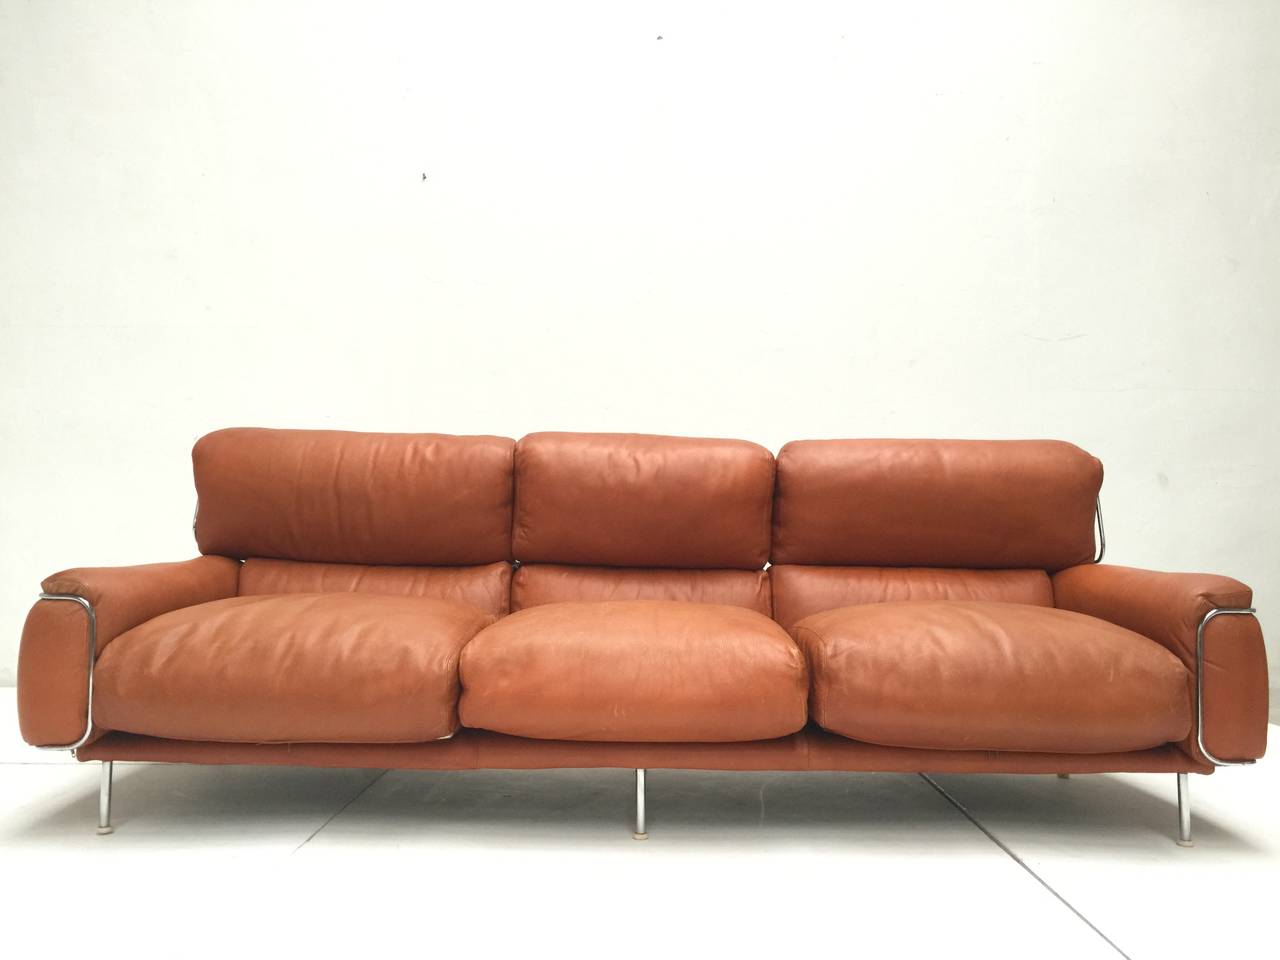 Italian Rare Three-Seat Leather Sofa by Vittorio Introini for Saporiti, 1968, Published